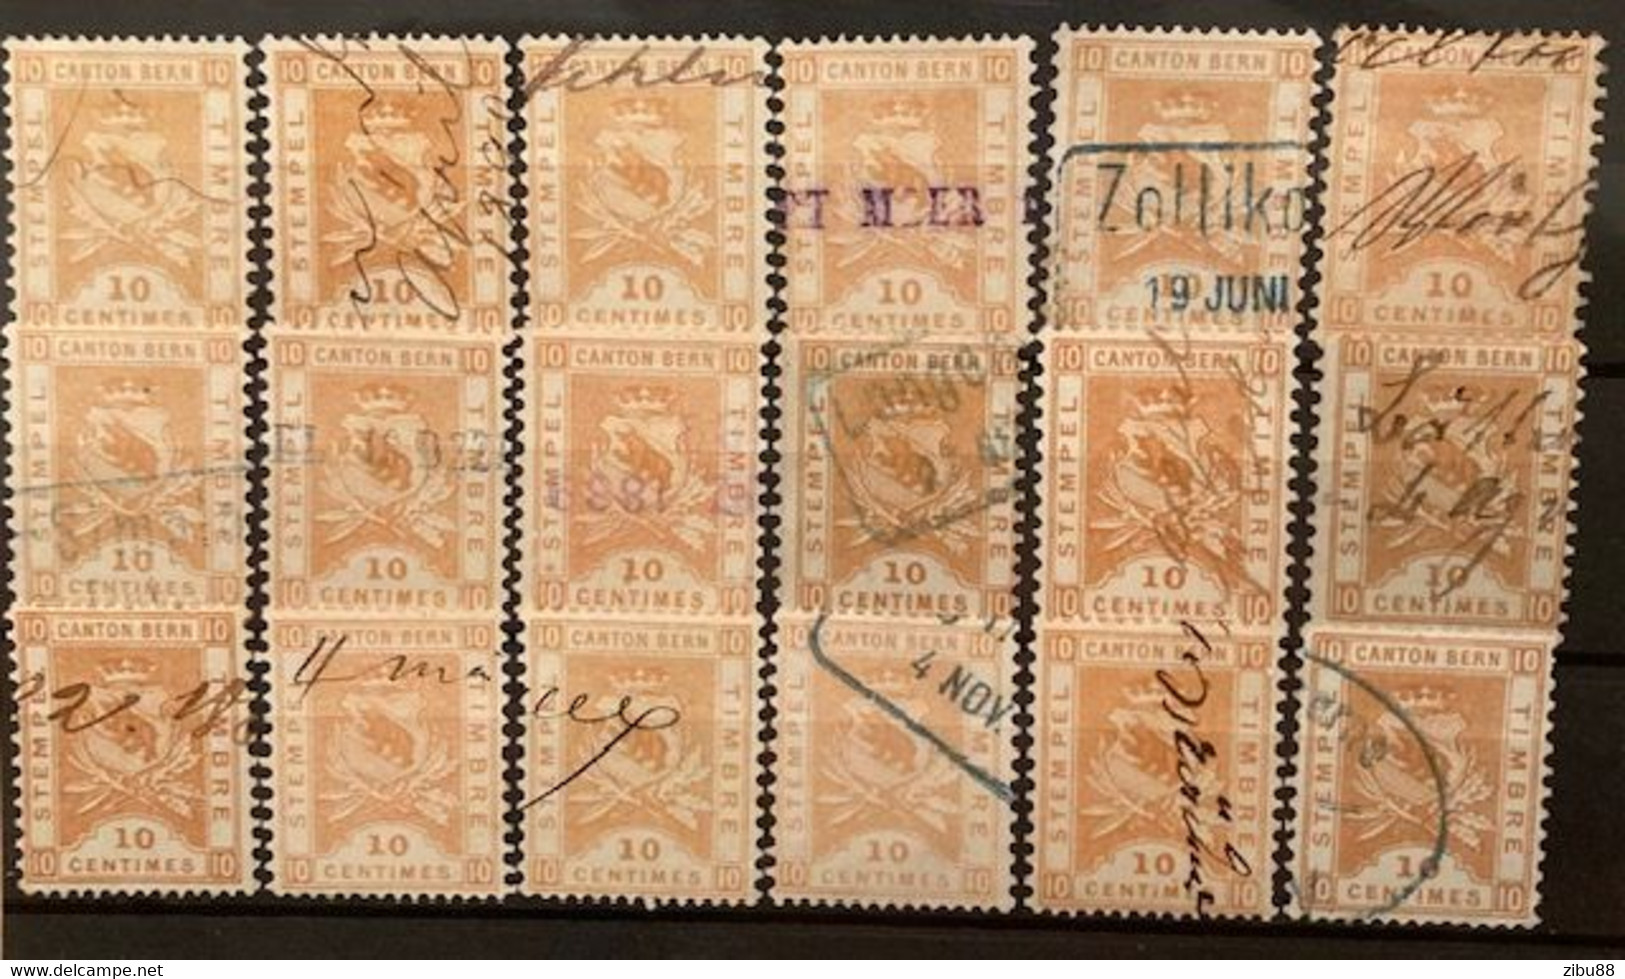 Fiskalmarken / Revenue Stamp Switzerland - Kanton Bern Steckkarte Stempelmarken 10 Centimes - Fiscaux